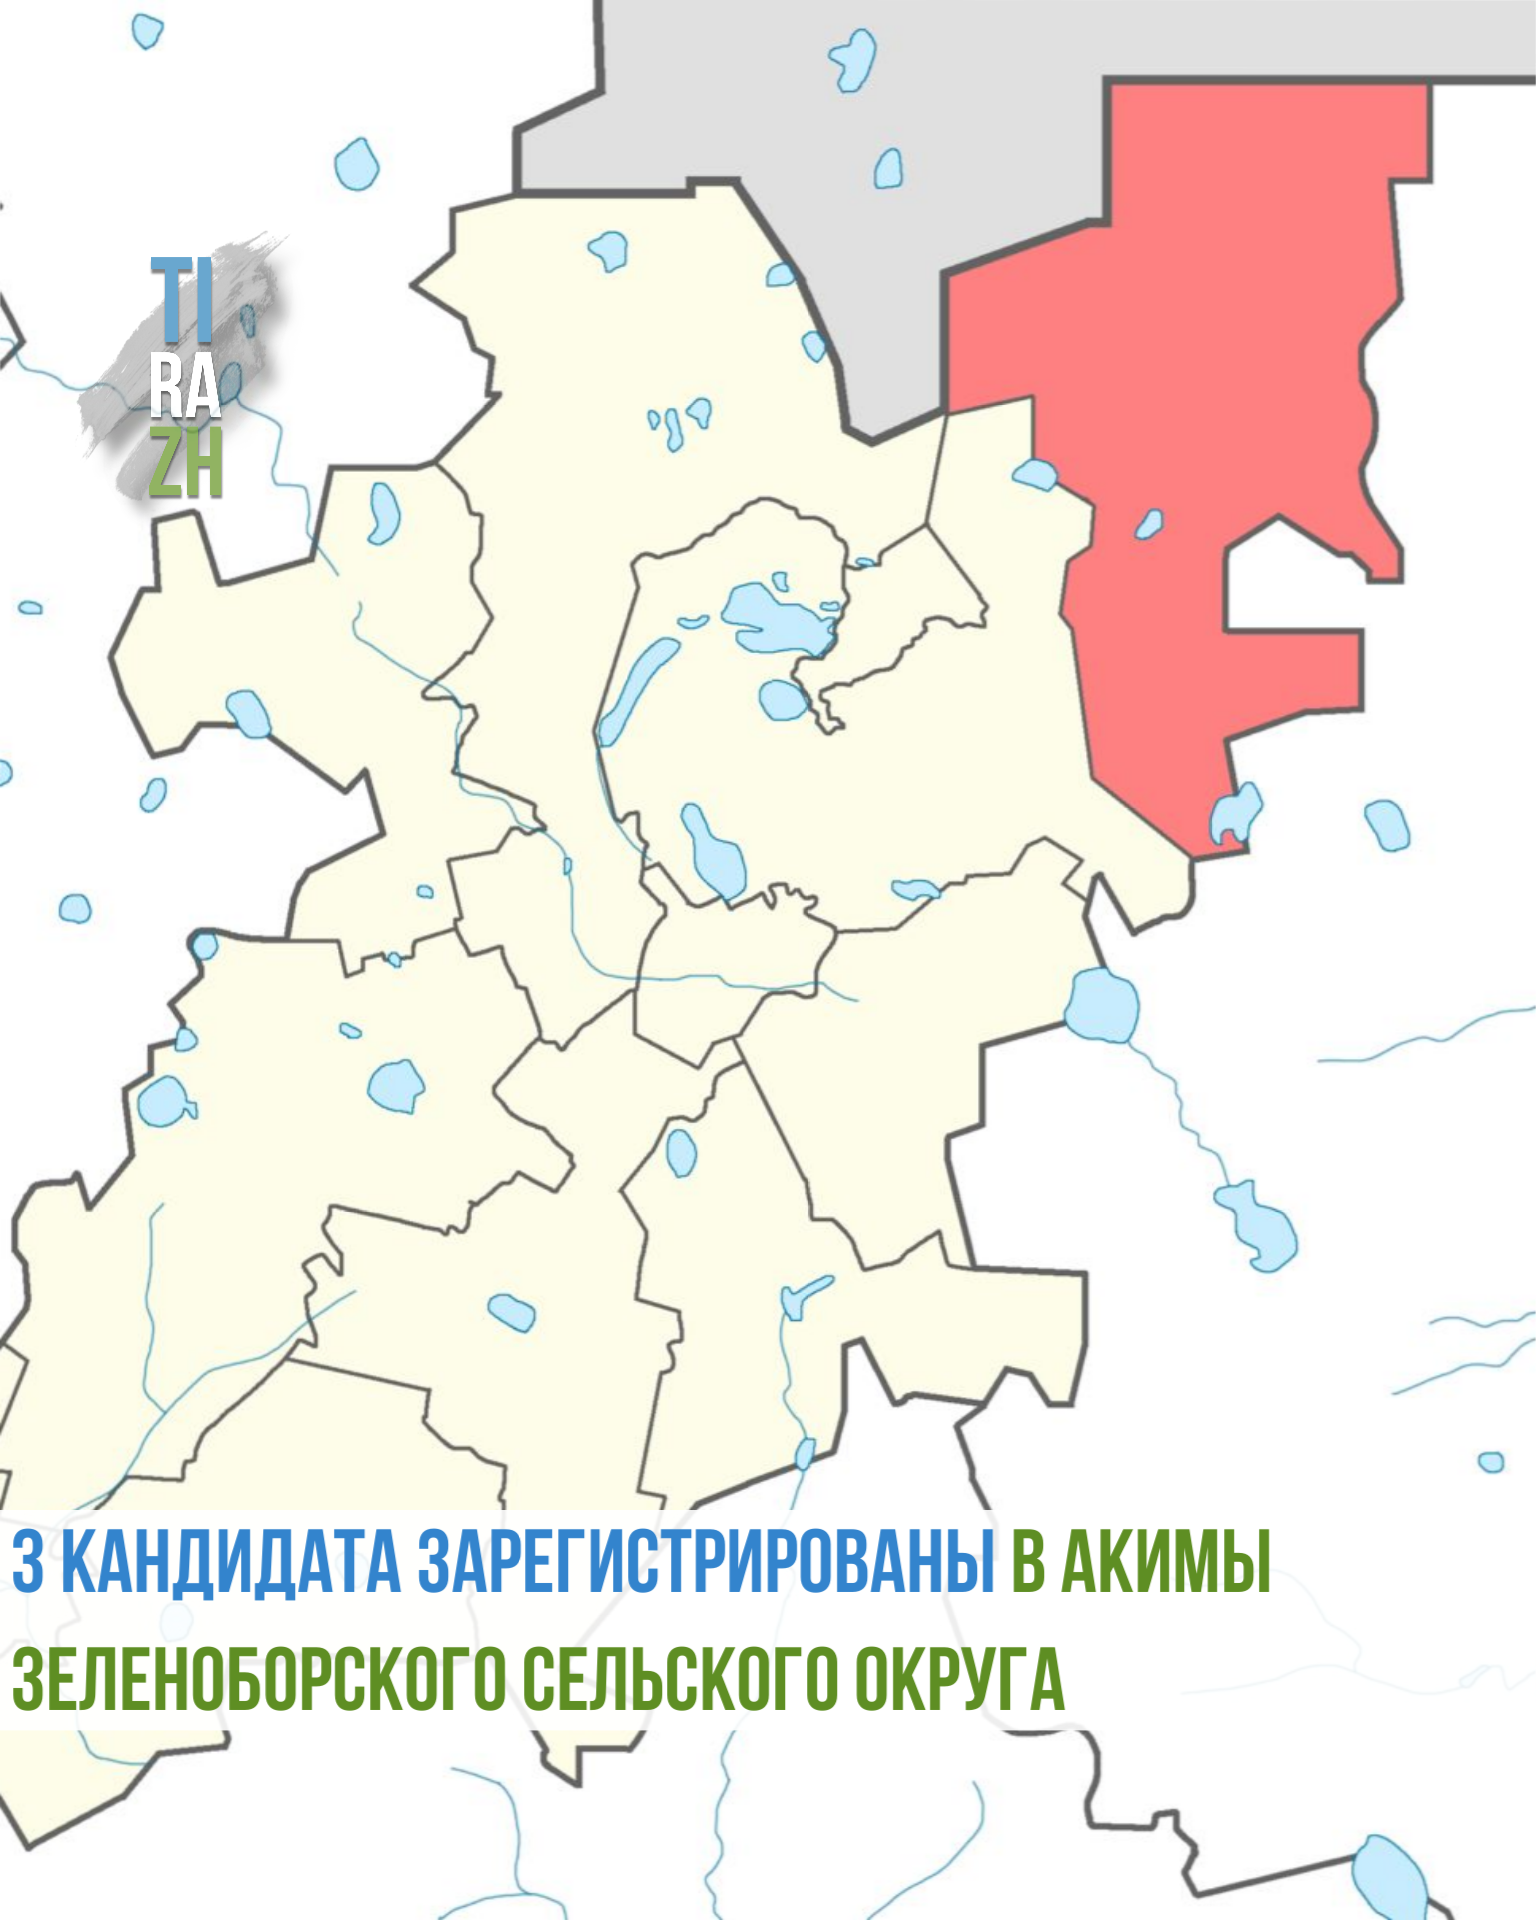 3 кандидата зарегистрированы в акимы Зеленоборского сельского округа